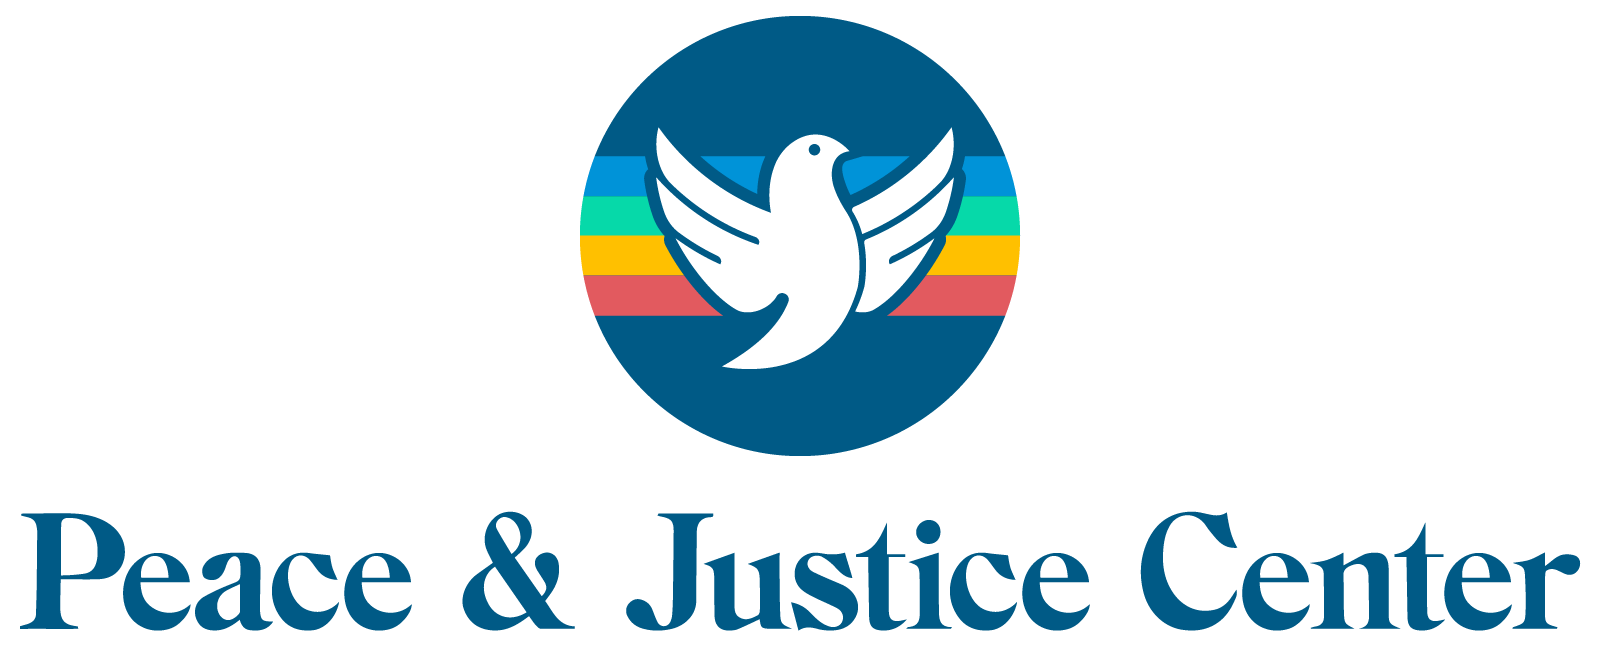 Peace & Justice Center Logo